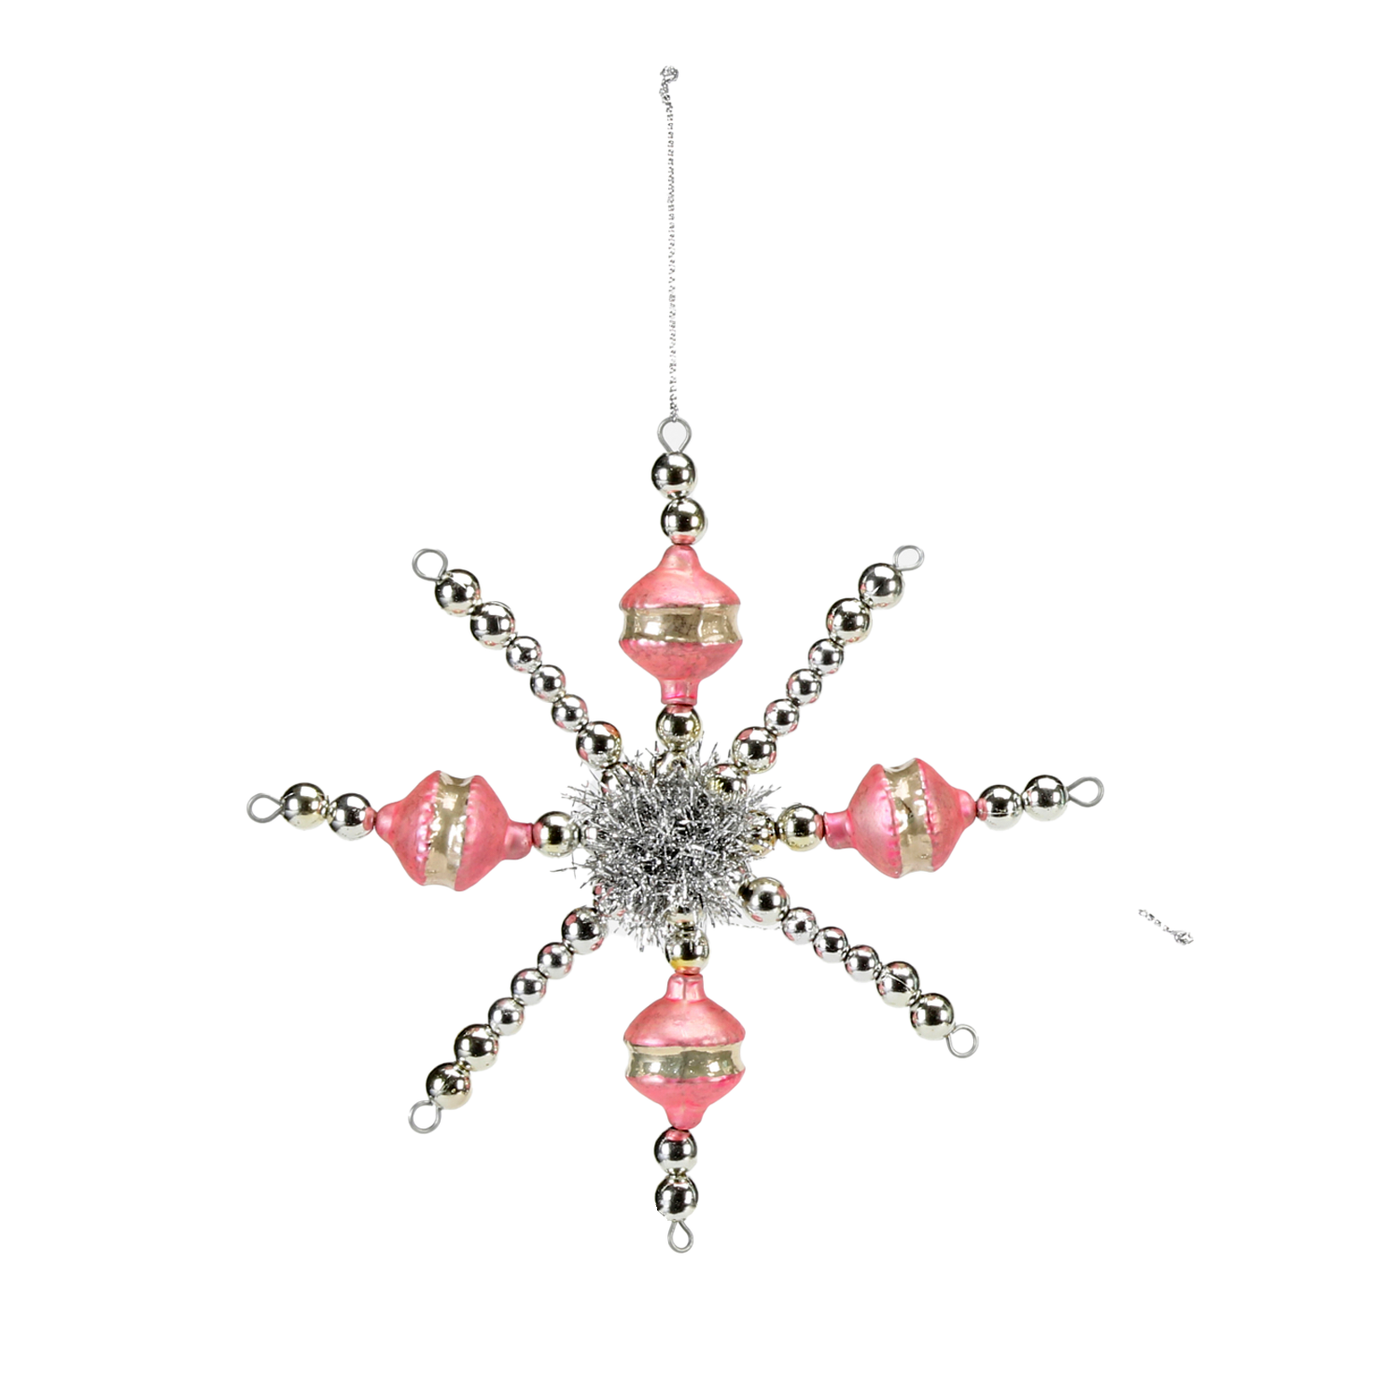 Vintage Snowflake Ornament - Pink